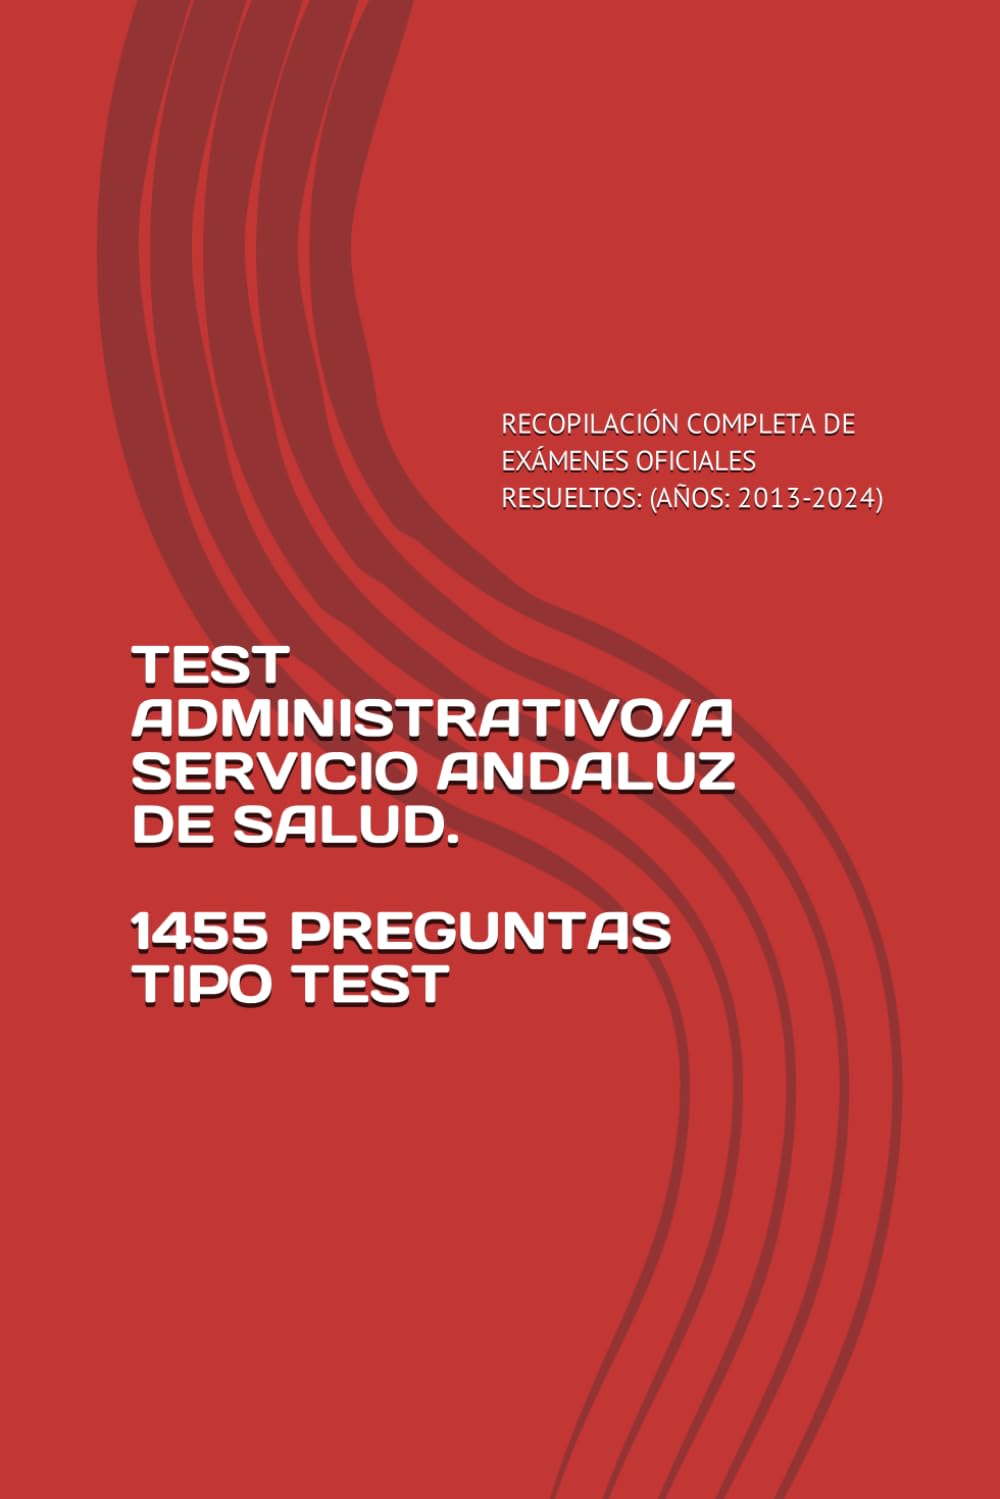 Test Administrativo/a del SAS (recopilación de exámenes del SAS) 61wlek10